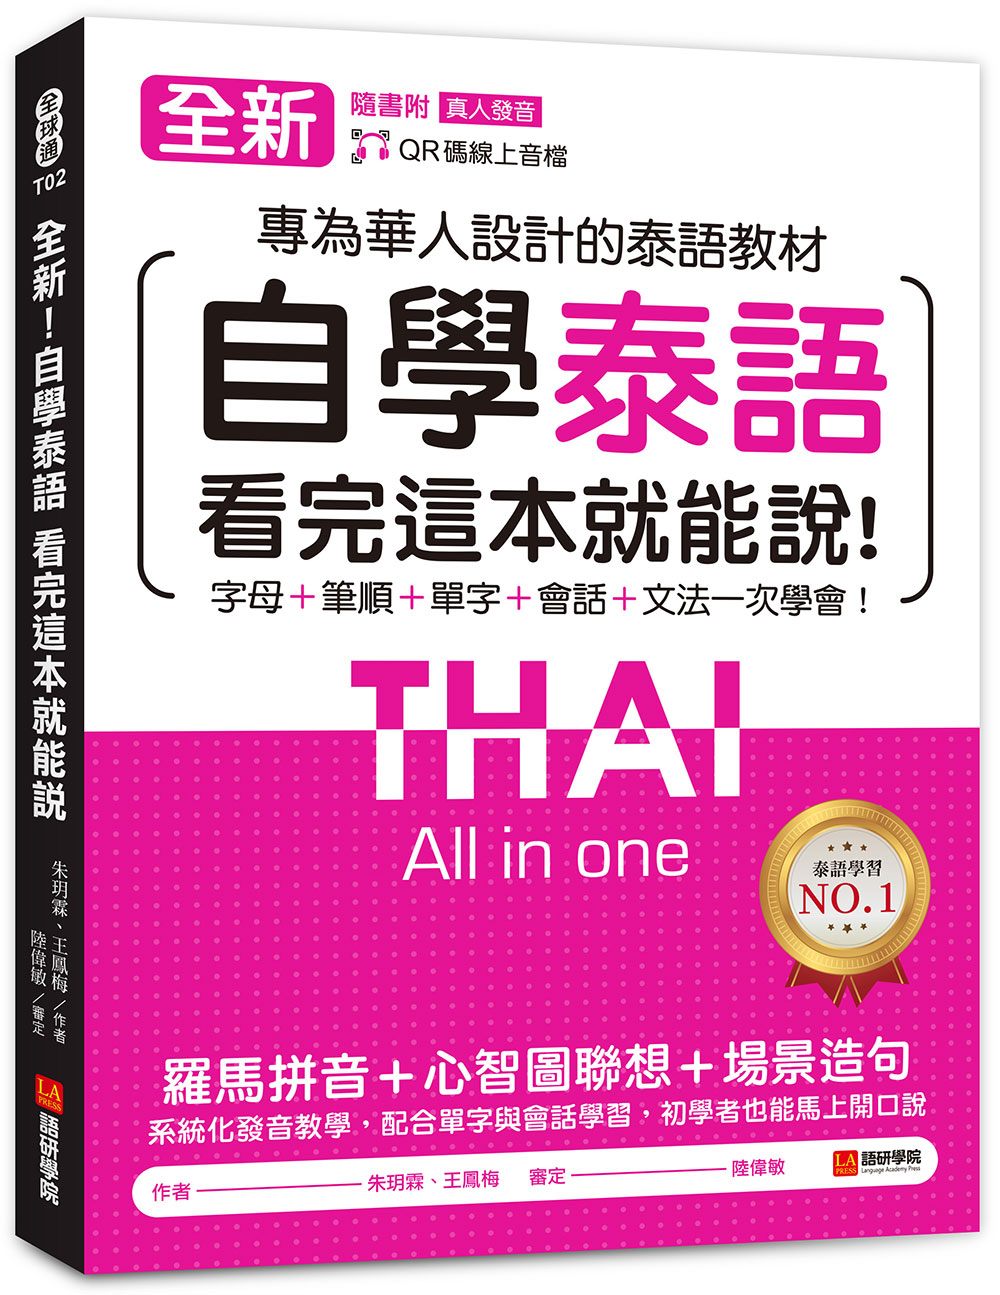 全新! 自學泰語看完這本就能說: 專為華人設計的泰語教材, 字母+筆順+ 